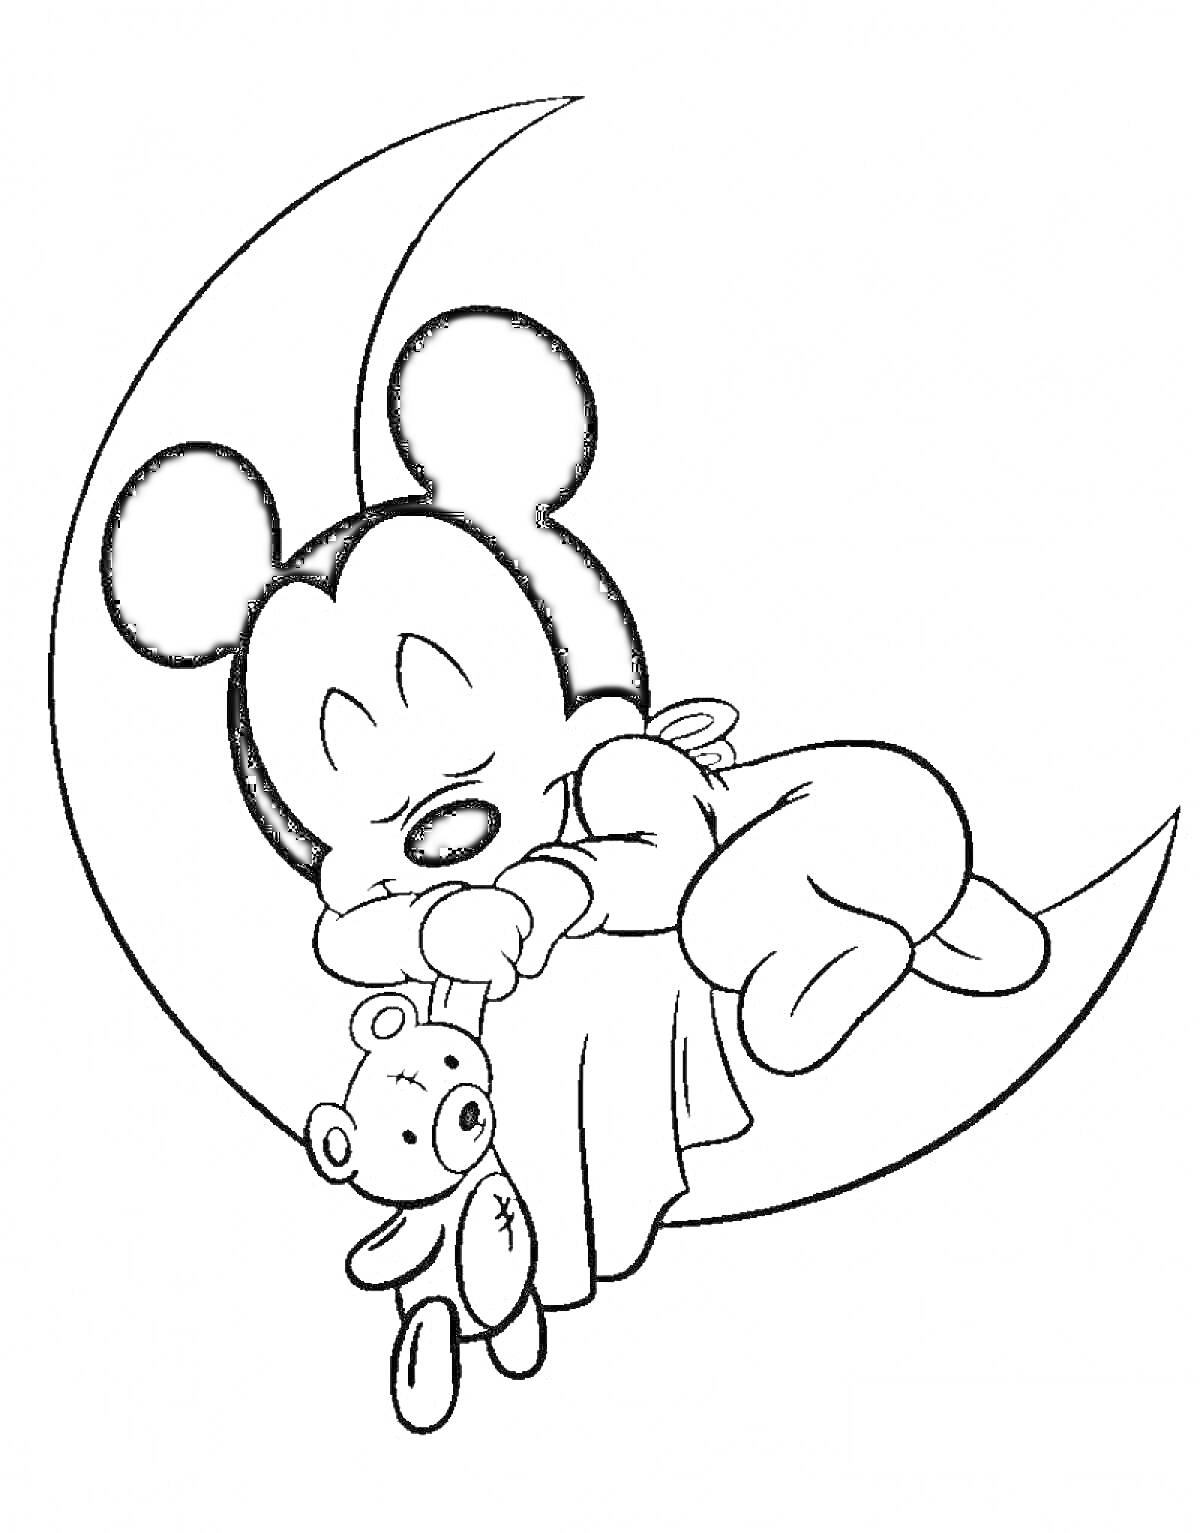 Раскраска Спящий мультяшный персонаж на луне с плюшевым мишкой